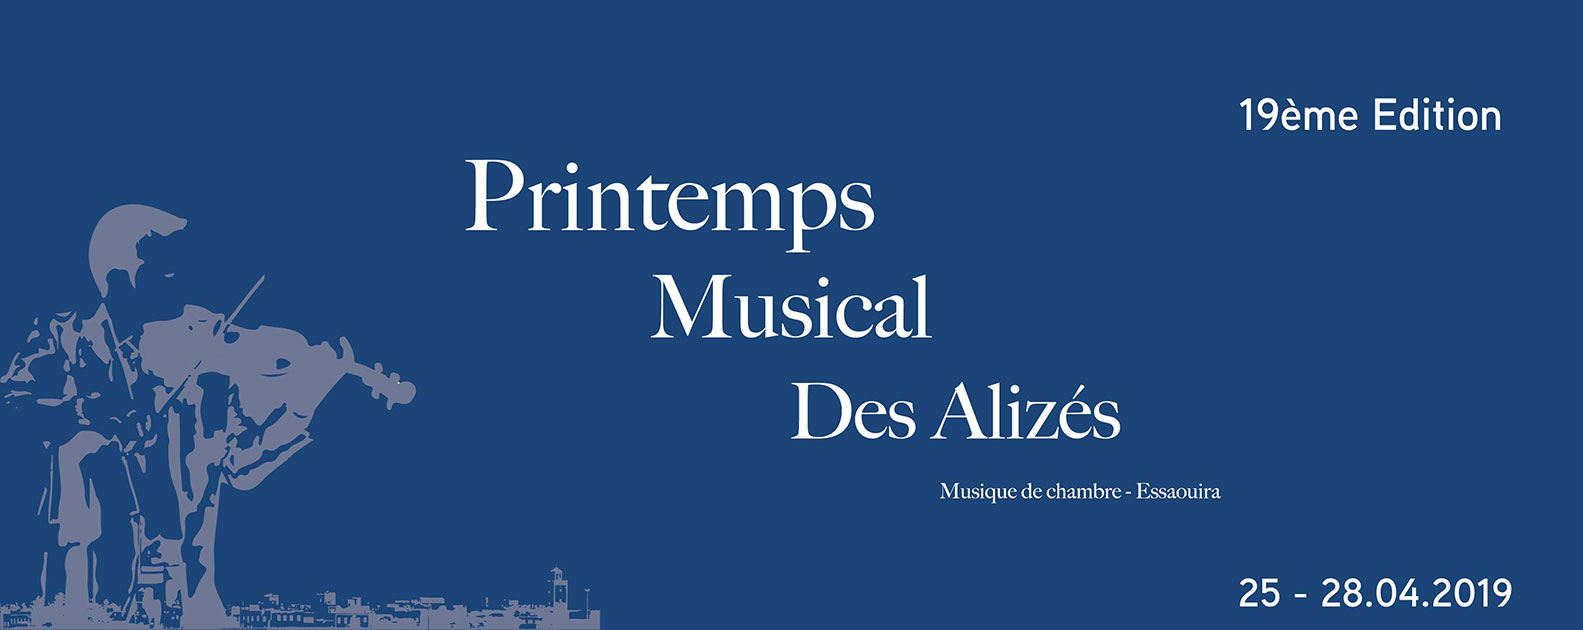 Printemps Musical des Alizés 